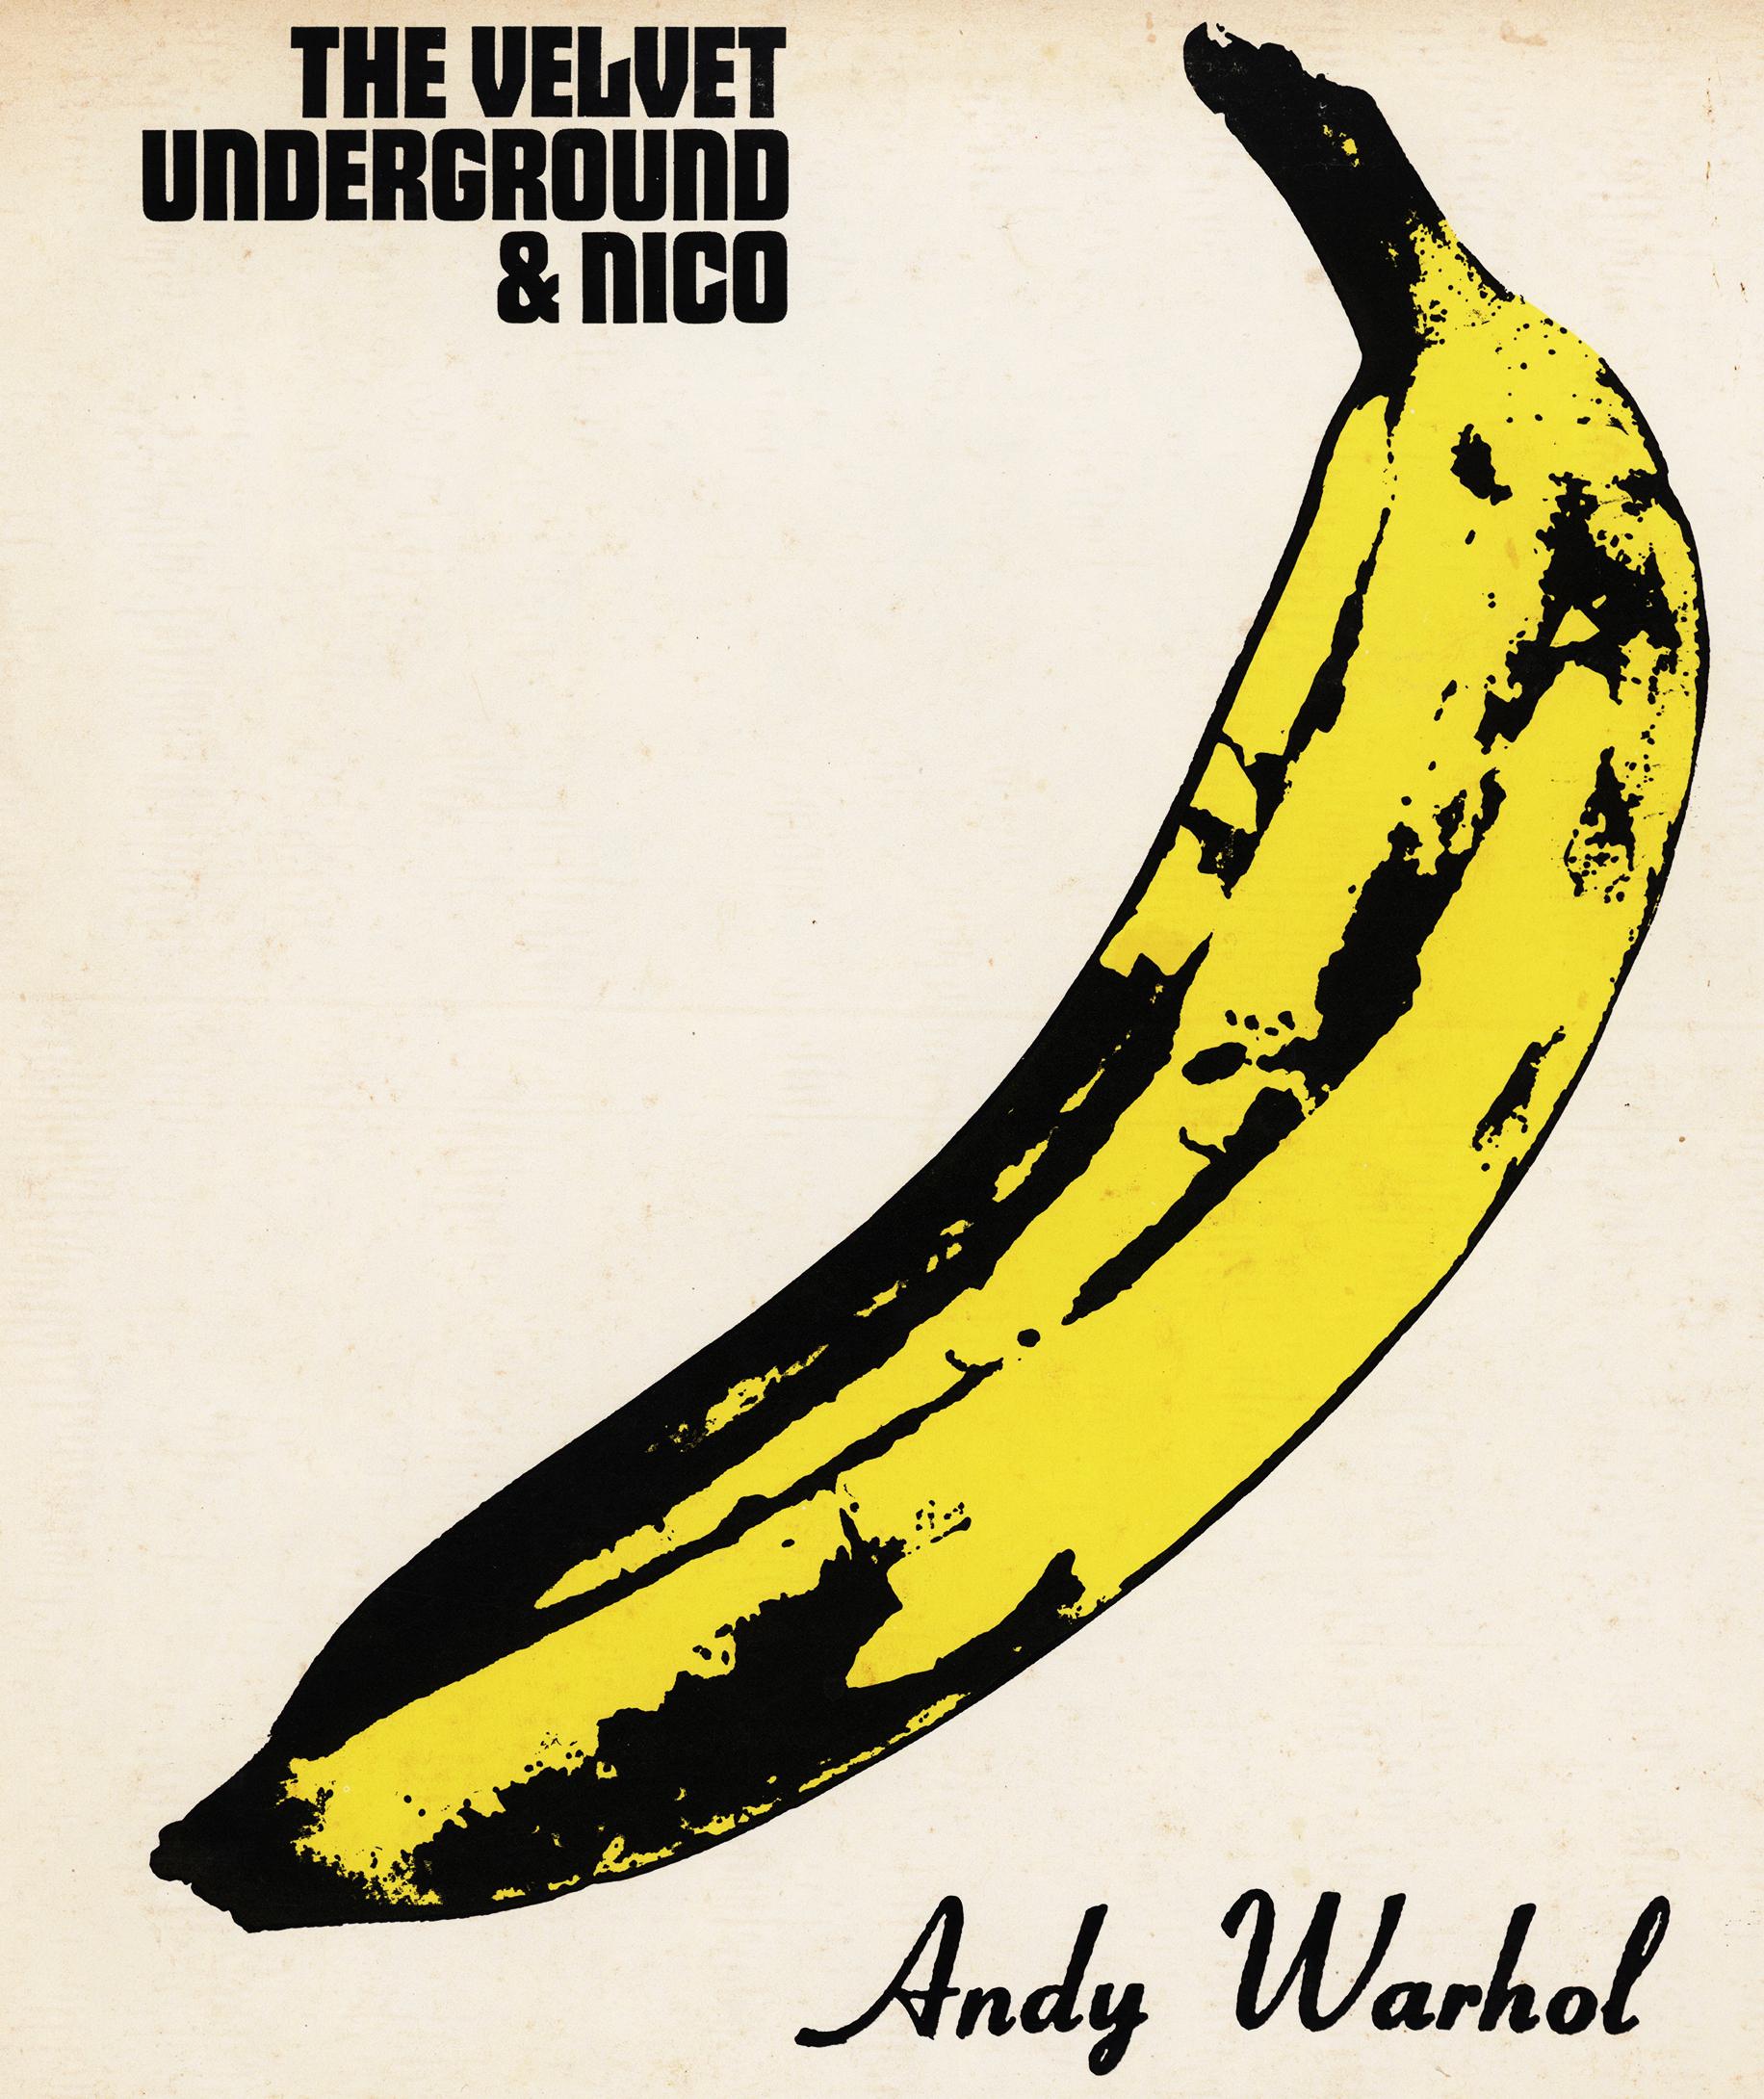 Le Velvet Underground et Nico
Autoproduit, 1985
LP, Réédition, Remasterisé
Verve Records 
V6 5008
Andy Warhol a produit et conçu la pochette.

Andy Warhol Banana Cover Art :
Disque vinyle de The Velvet Underground & Nico, datant du début des années